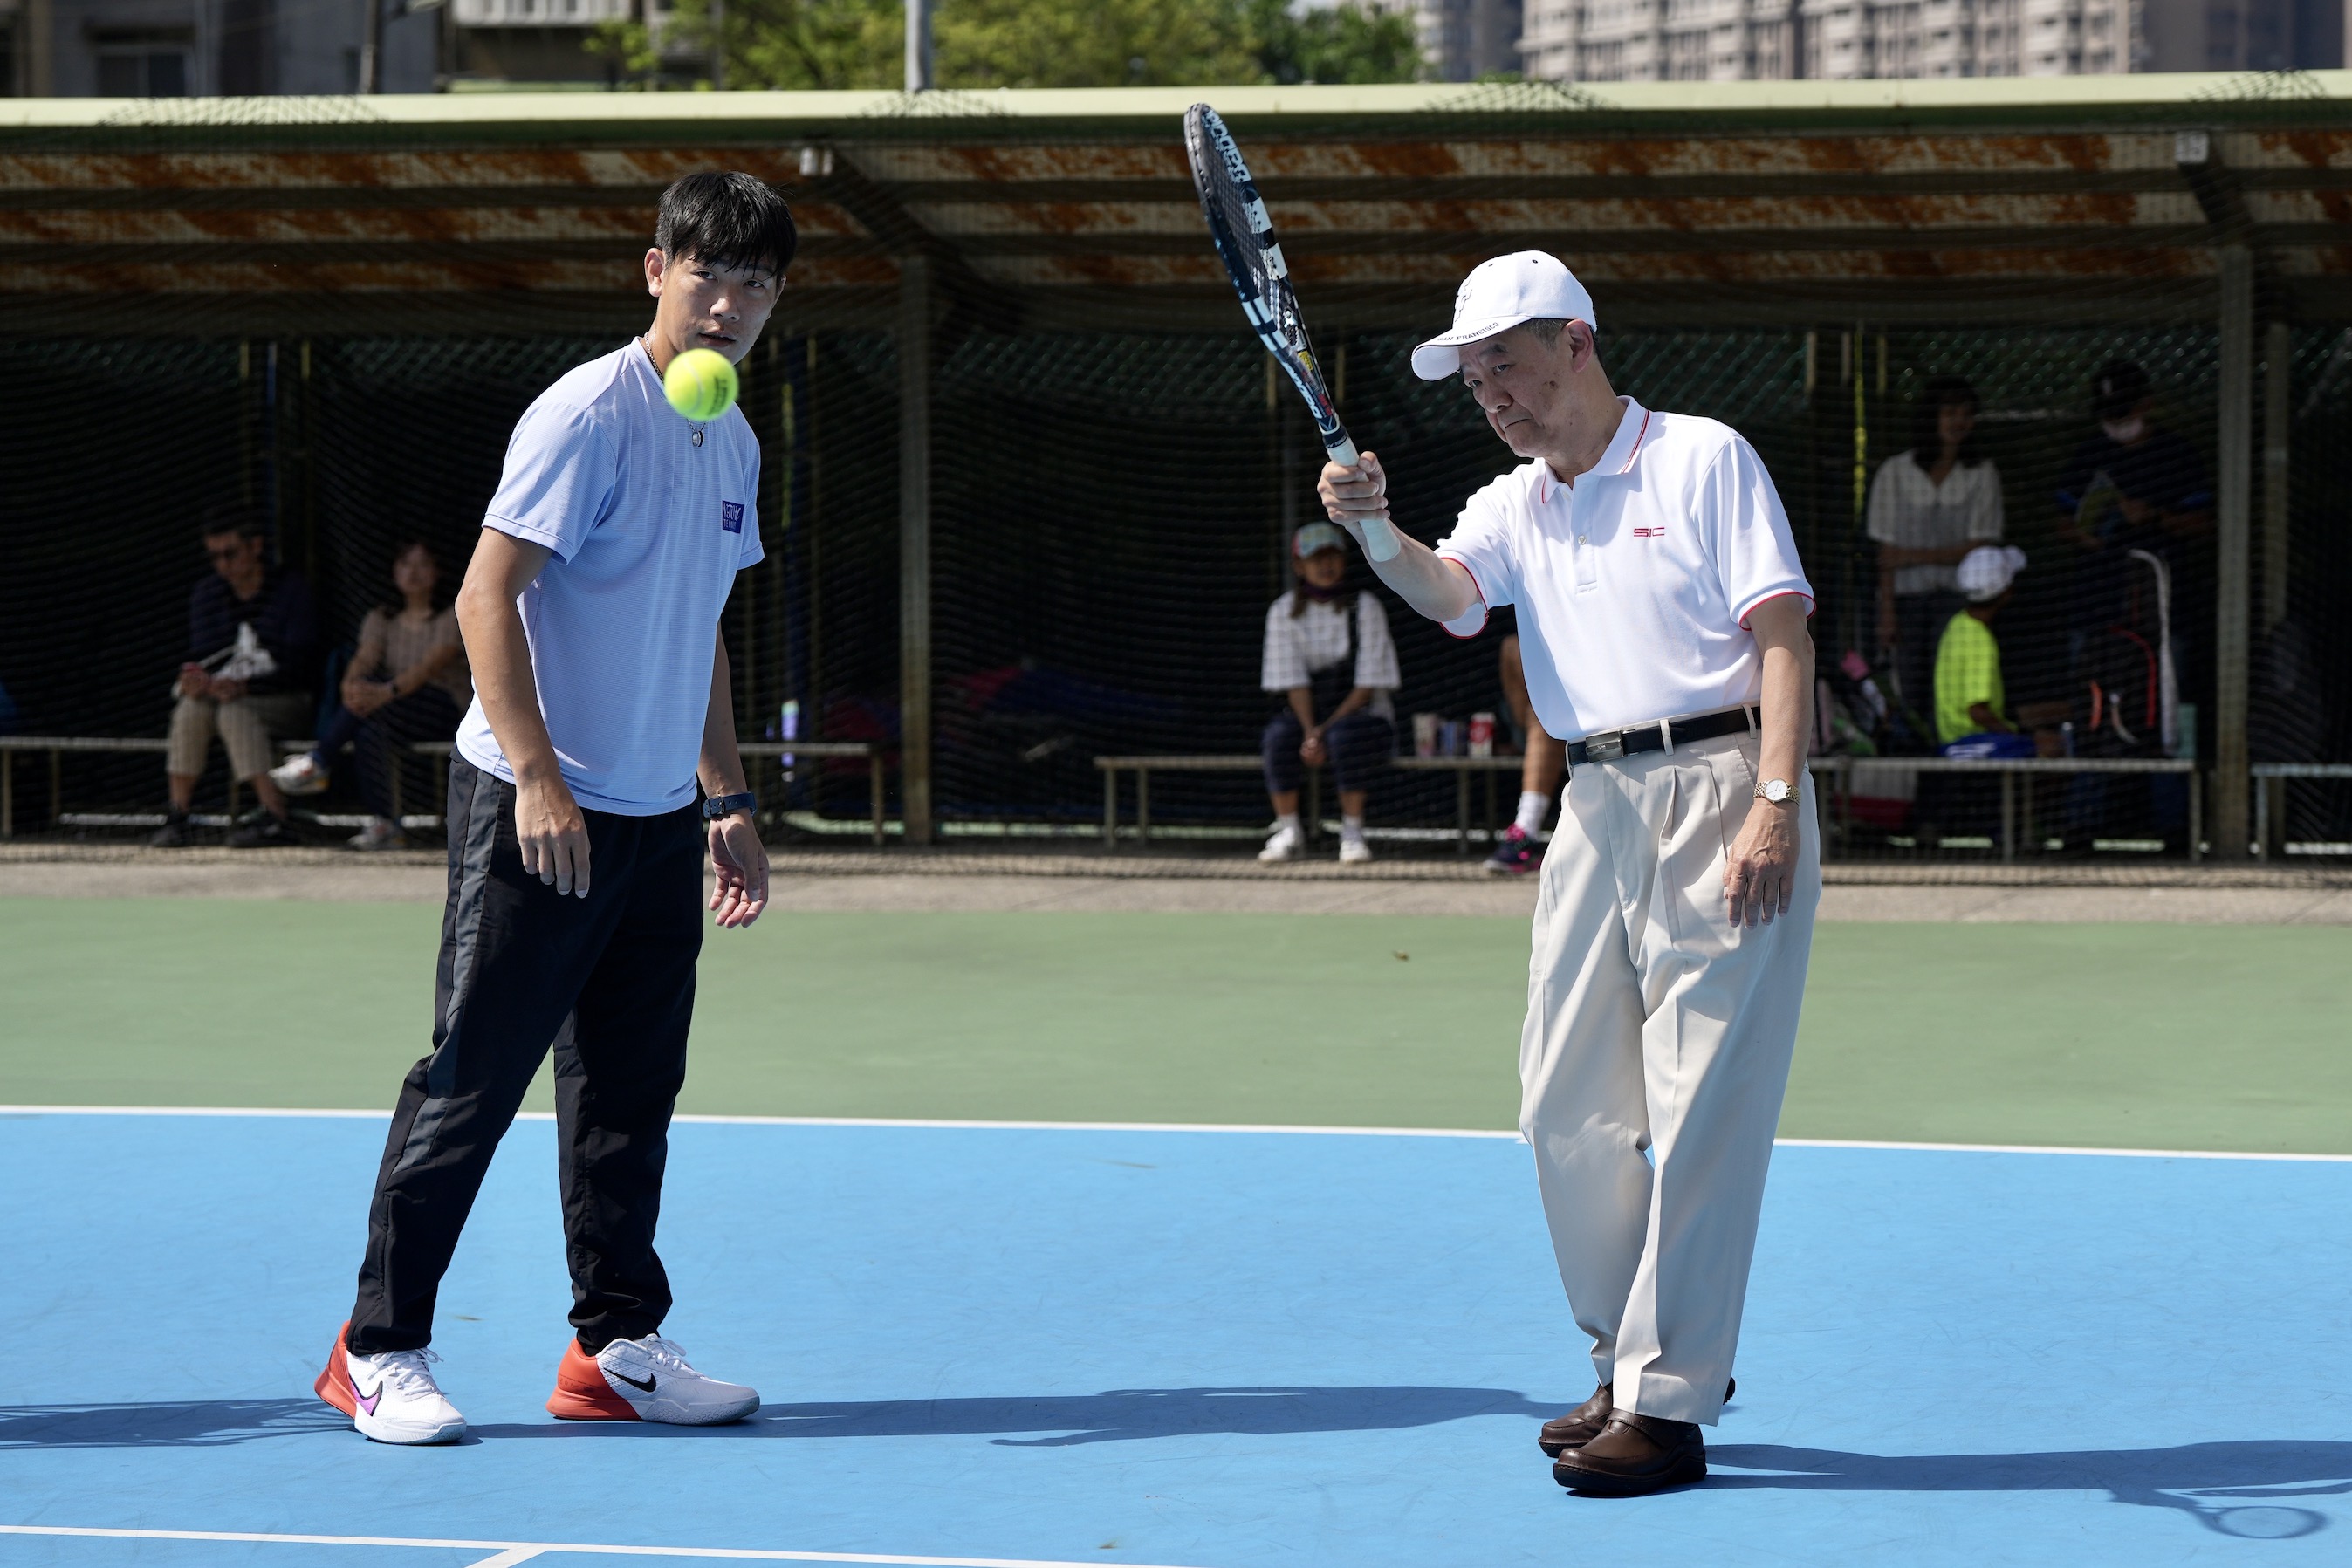 翰可國際股份有限公司董事長陳洋淵(右)。基隆市青少年網球運動發展協會提供